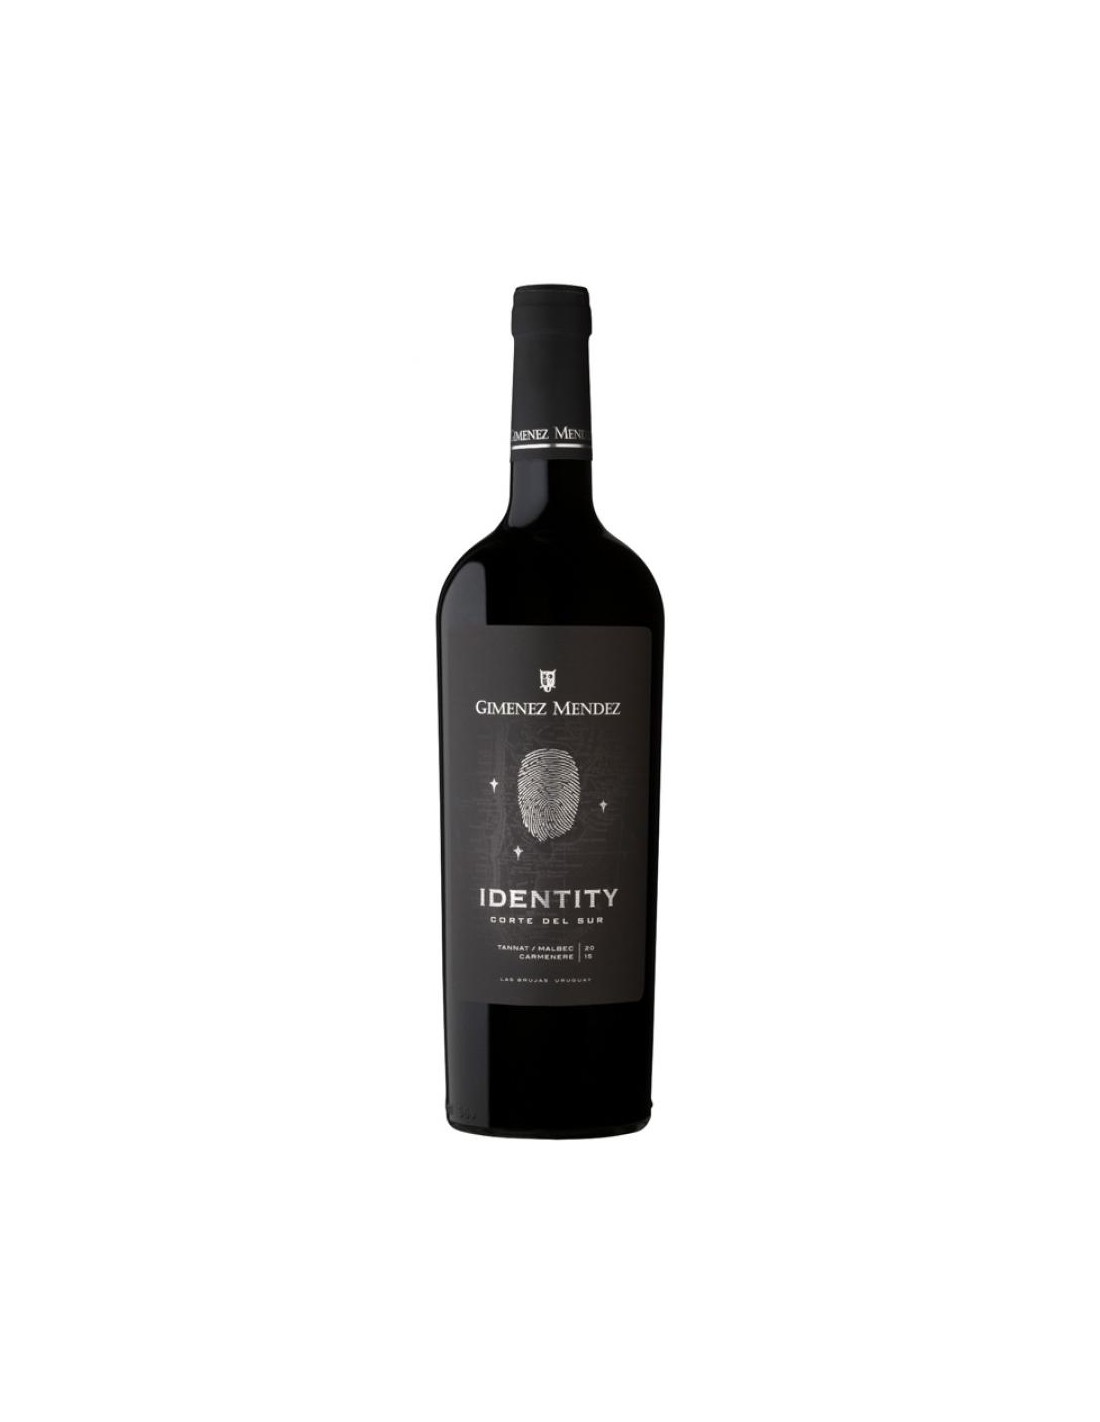 Vin rosu, Cupaj, Gimenez Mendez Identity, 0.75L, 14.5% alc., Uruguay